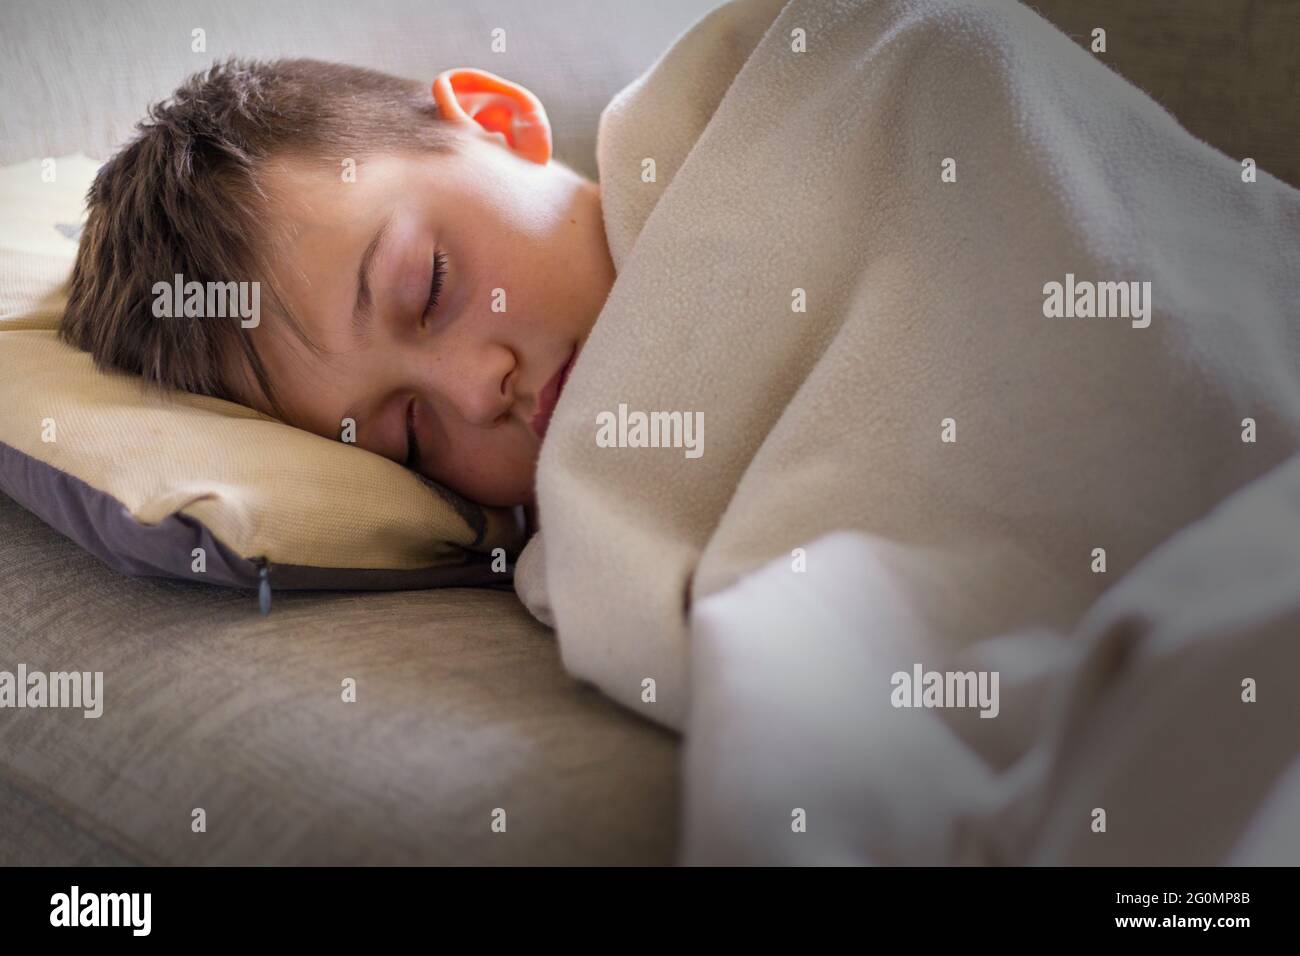 Teenage boy fallen asleep on sofa Stock Photo